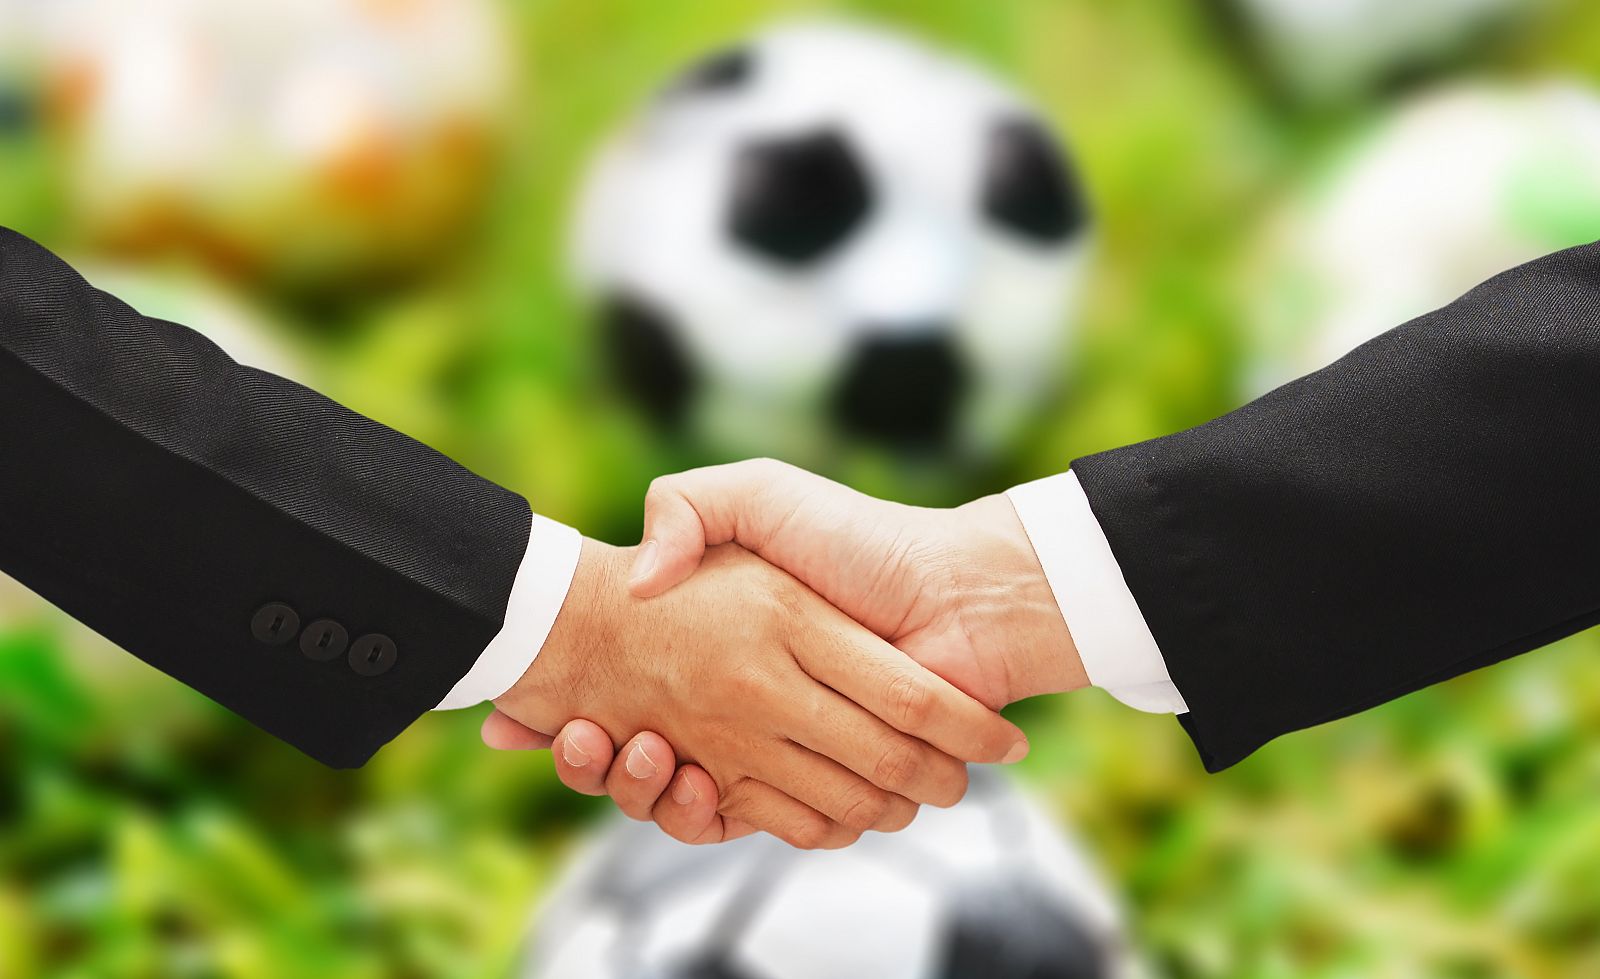 Composición artística de un acuerdo en el fútbol